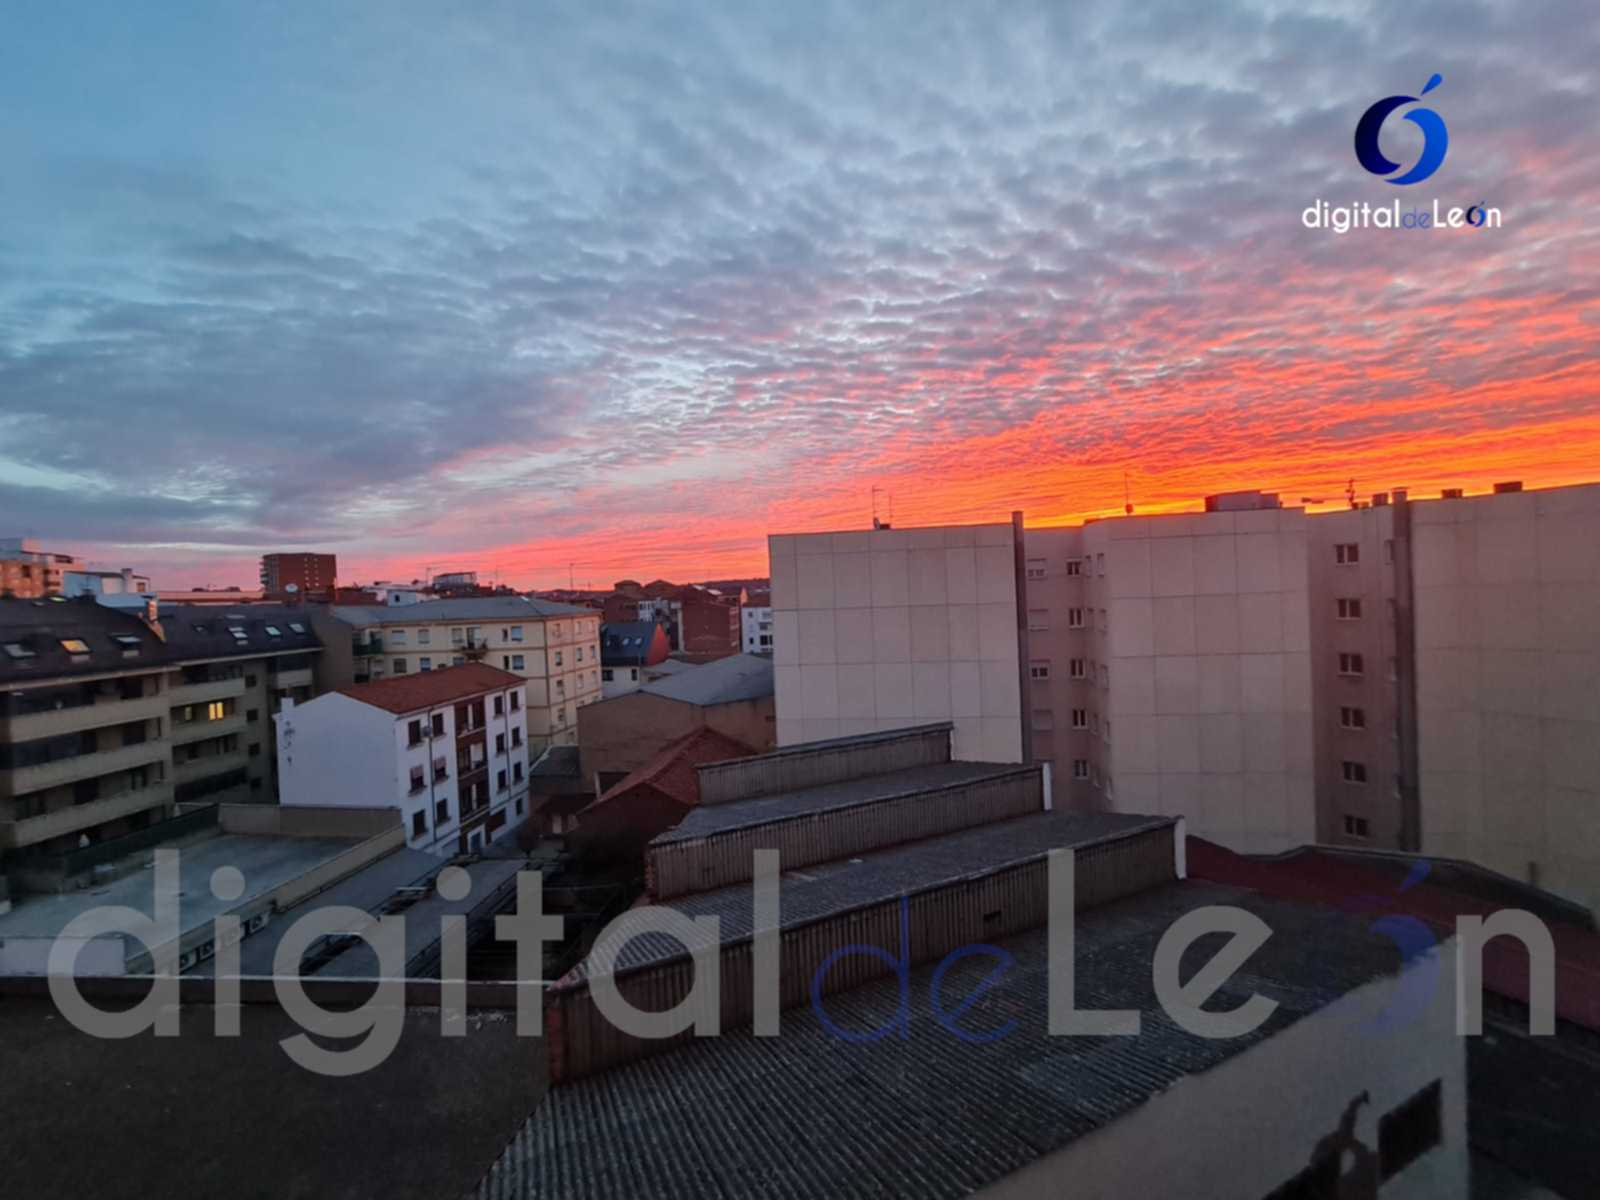 Precioso amanecer en León un 3 de febrero - Digital de León